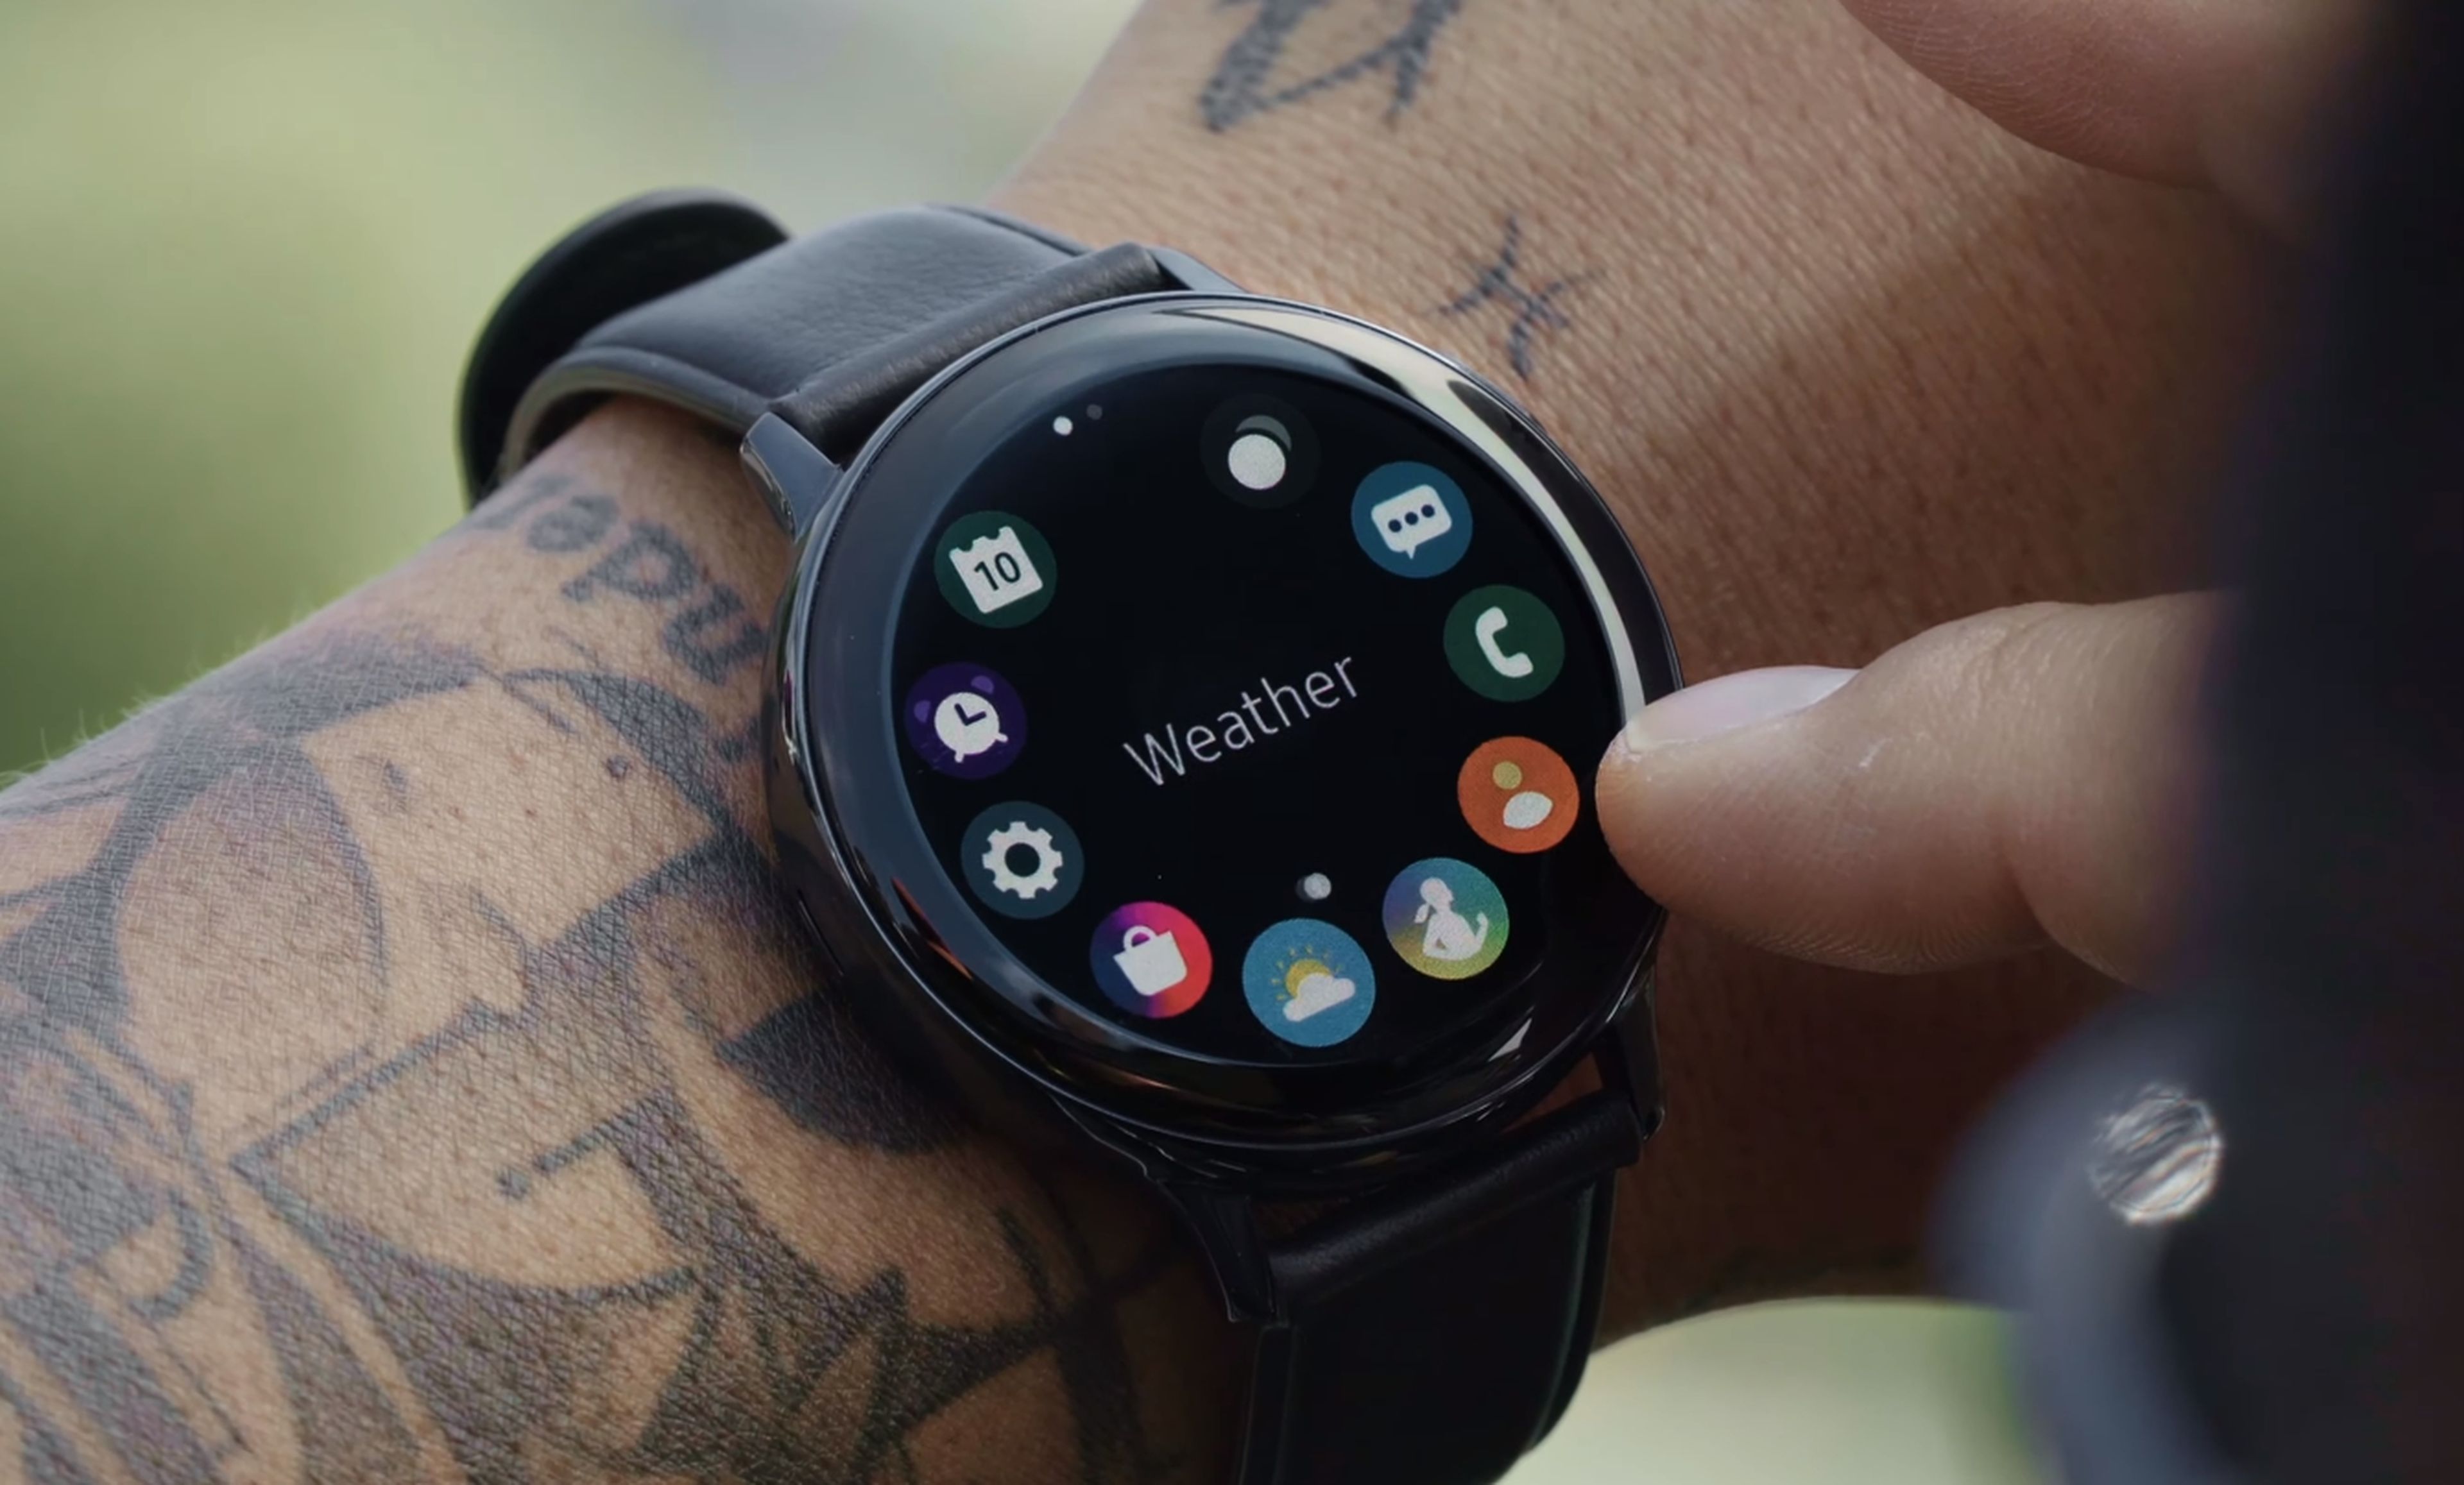 Nuevo smartwatch Galaxy Watch Active2 con bisel táctil y electrocardiograma